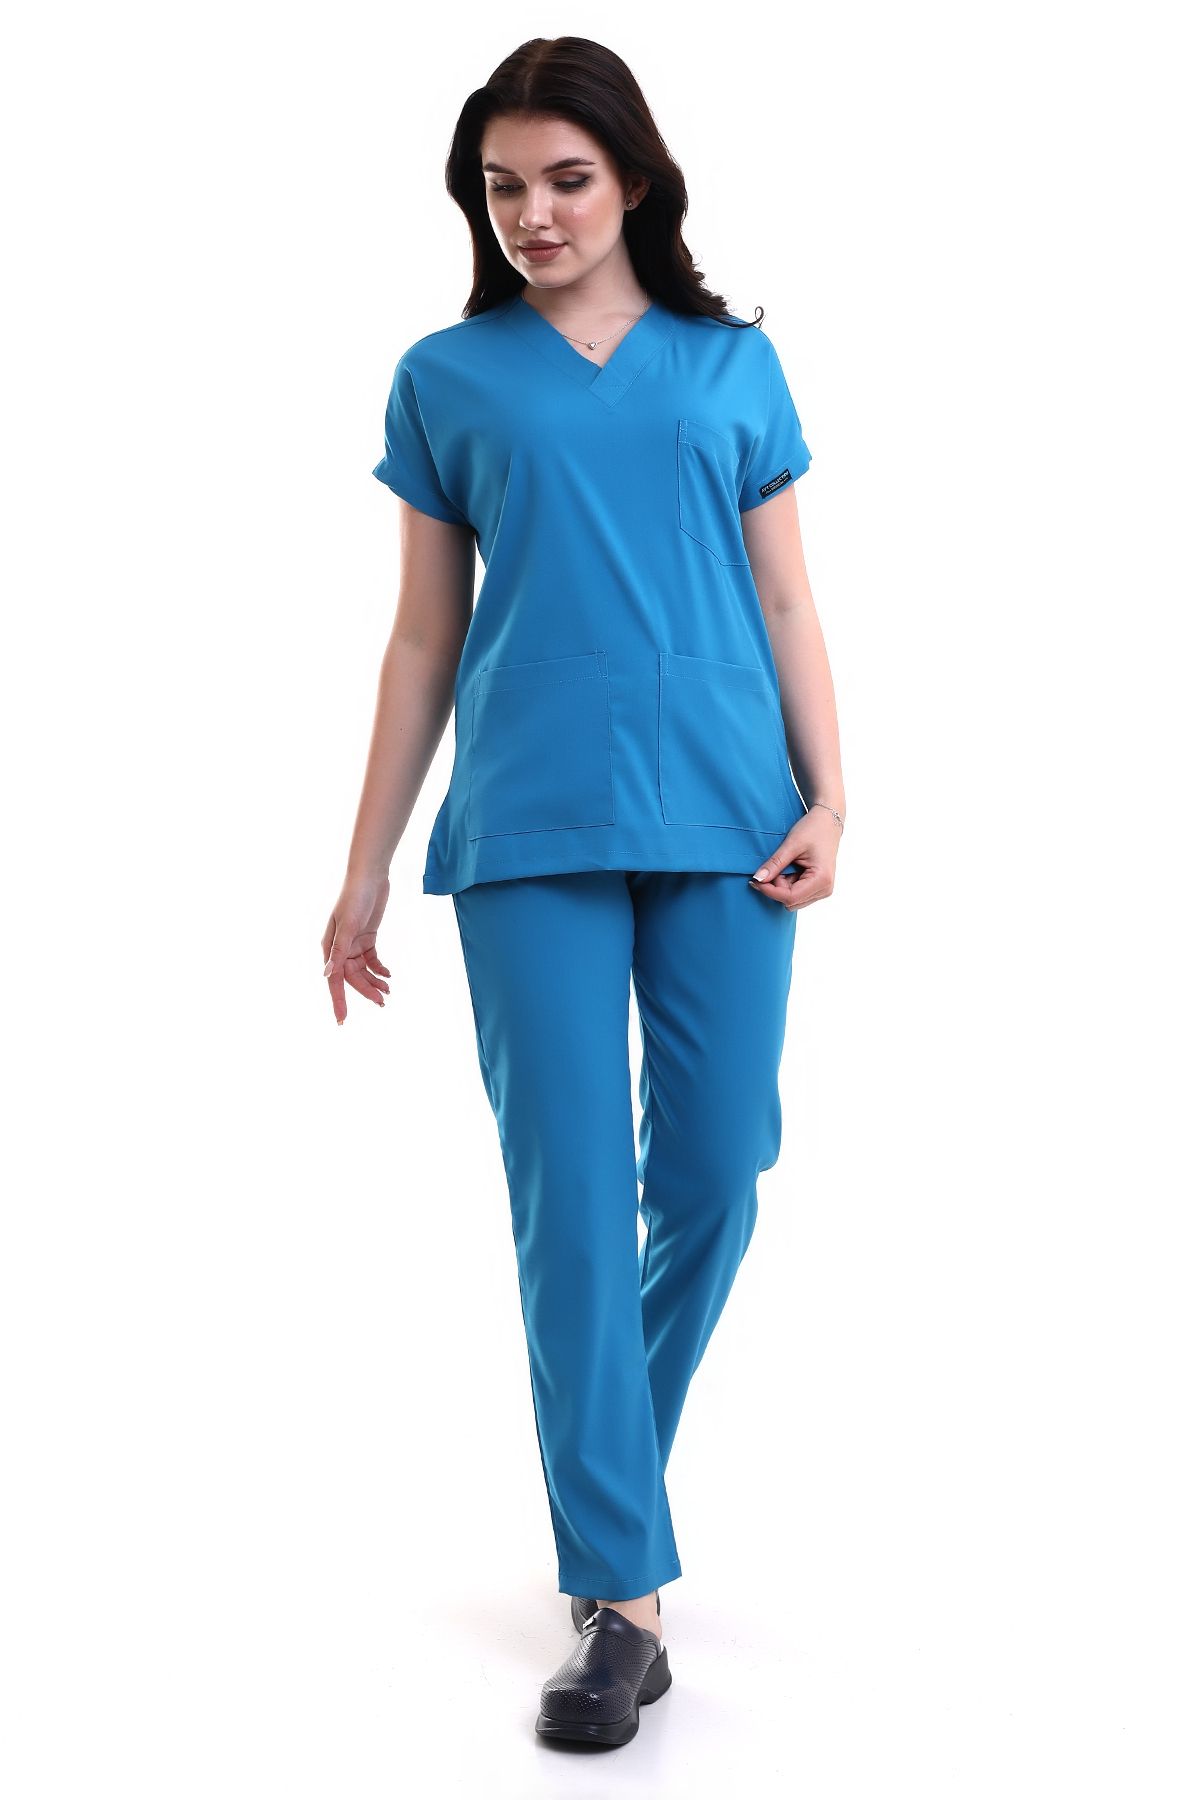 Aytcollectionmedical Cerrahi Doktor Hemşire Forması Scrubs Petrol Mavi Rengi Licralı Forma (4 Mevsimlik Kumaş )